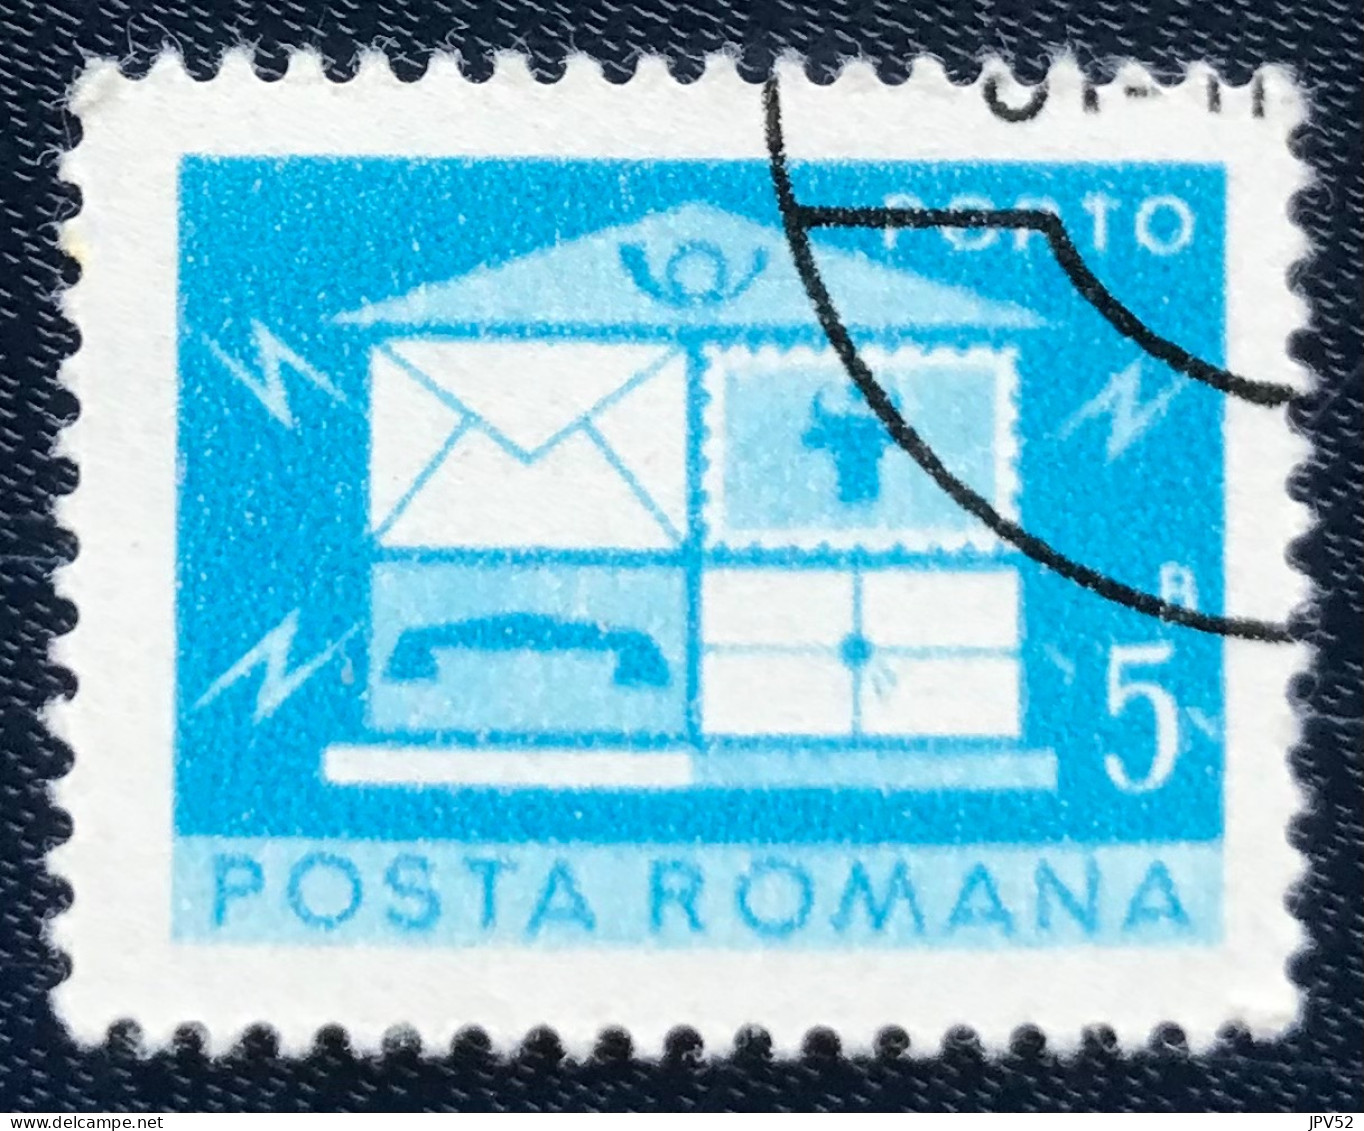 Romana - Roemenië - C14/54 - 1974 - (°)used - Michel 119 - Brievenbus - Postage Due